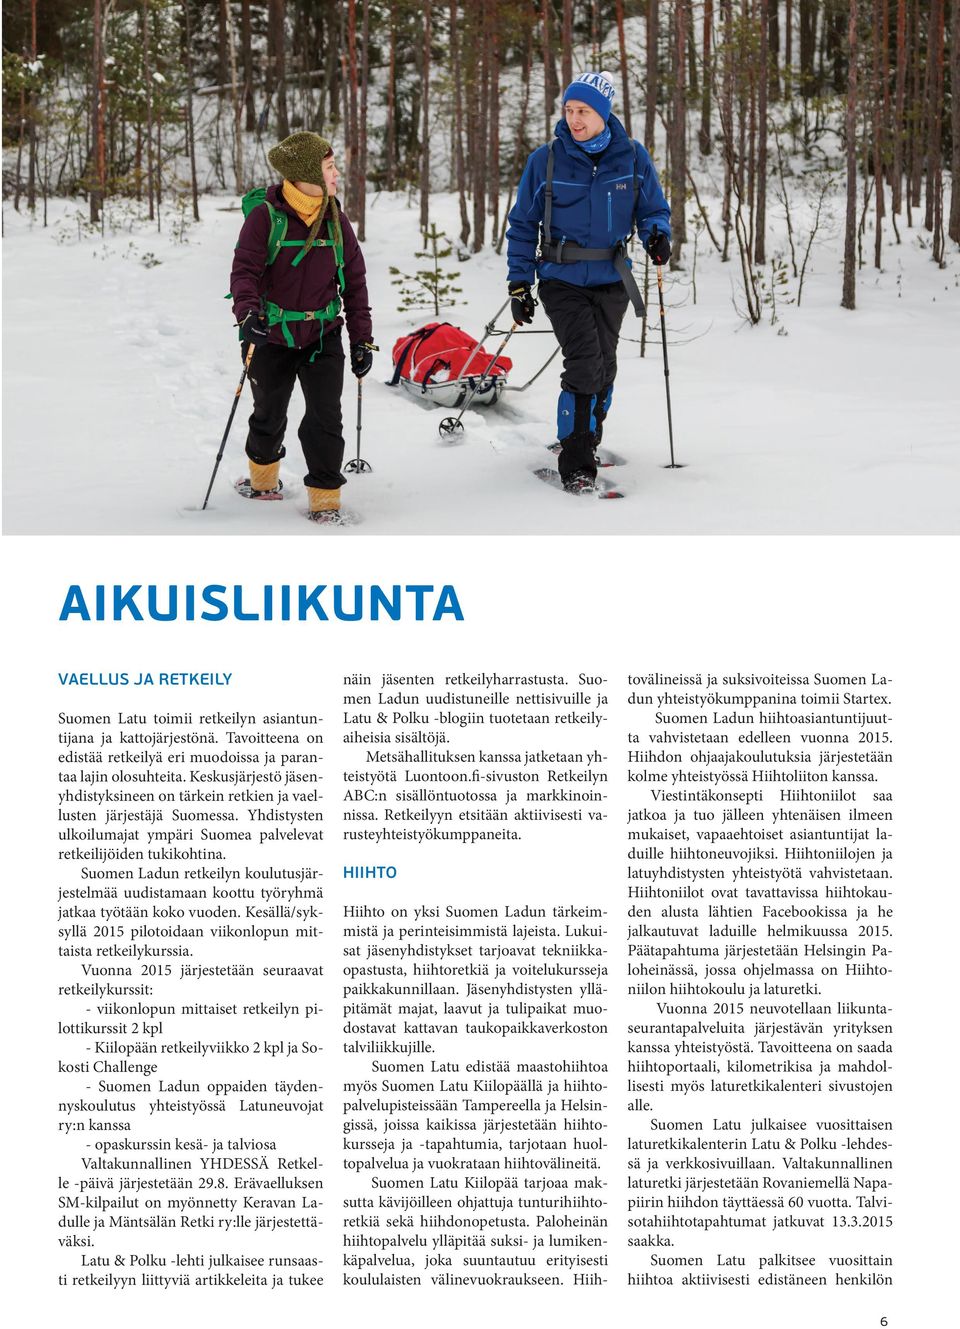 Suomen Ladun retkeilyn koulutusjärjestelmää uudistamaan koottu työryhmä jatkaa työtään koko vuoden. Kesällä/syksyllä 2015 pilotoidaan viikonlopun mittaista retkeilykurssia.